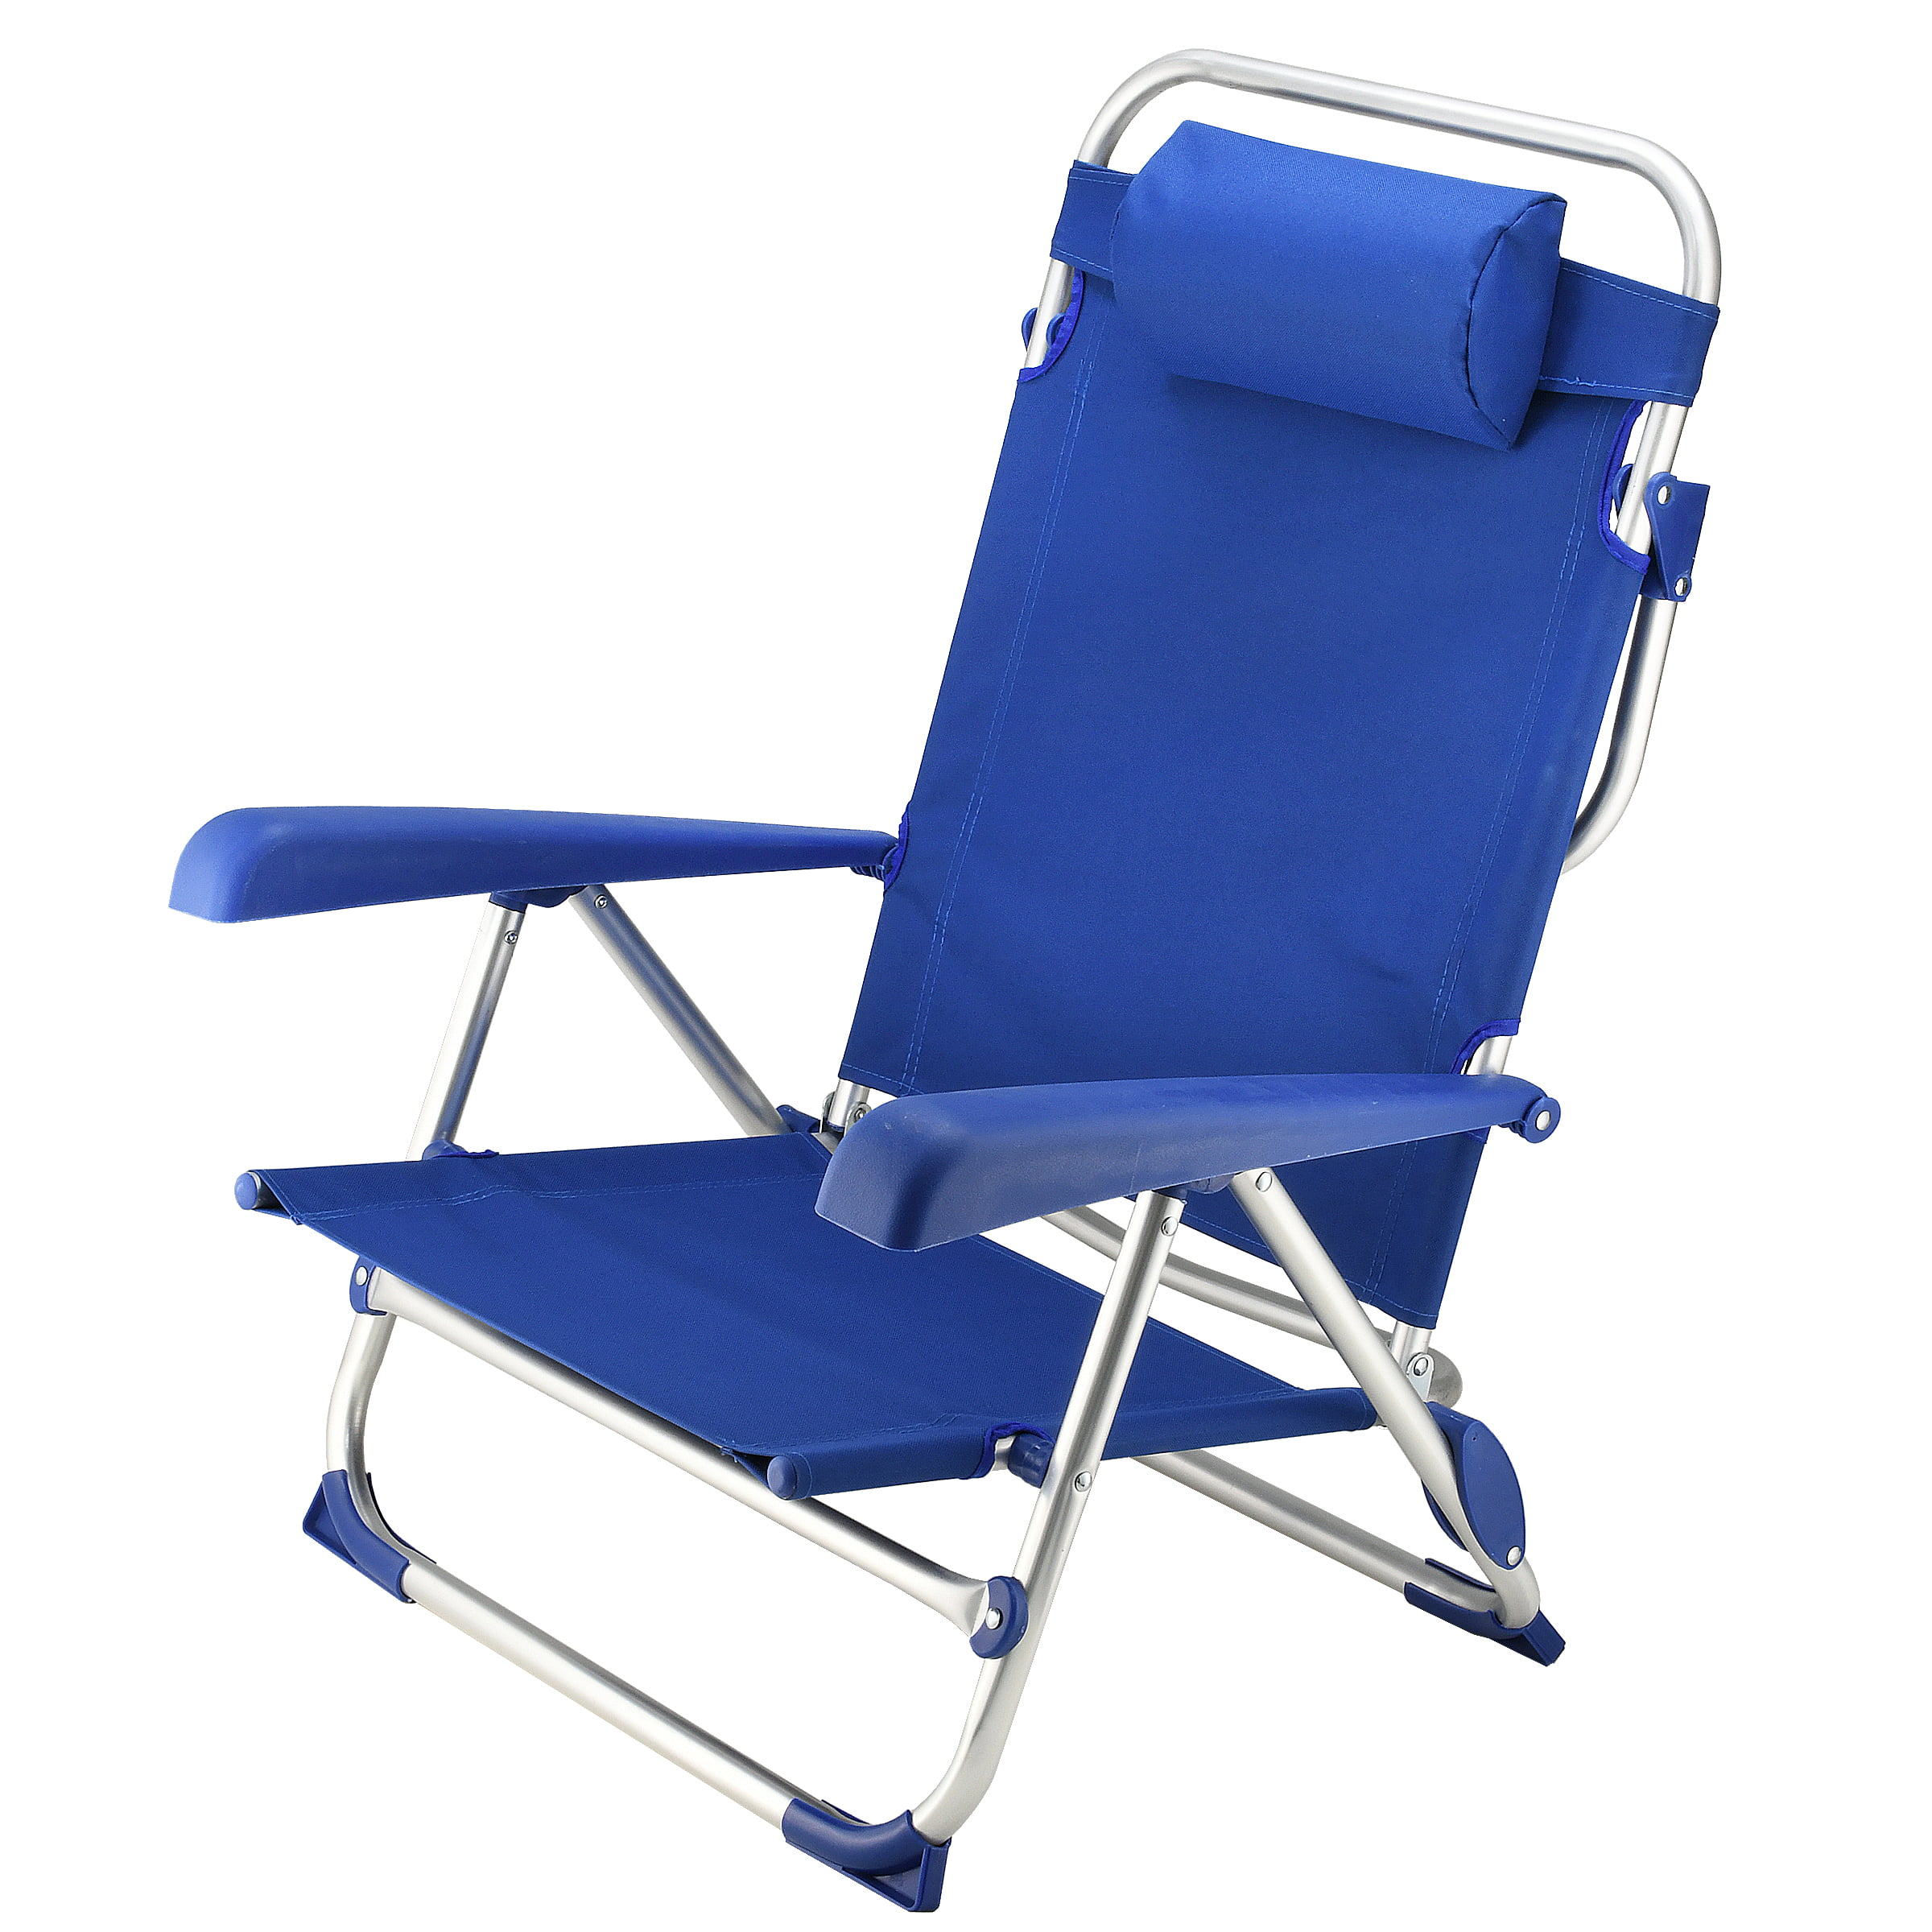 5-Position Folding Beach Chair - Walmart.com - Walmart.com